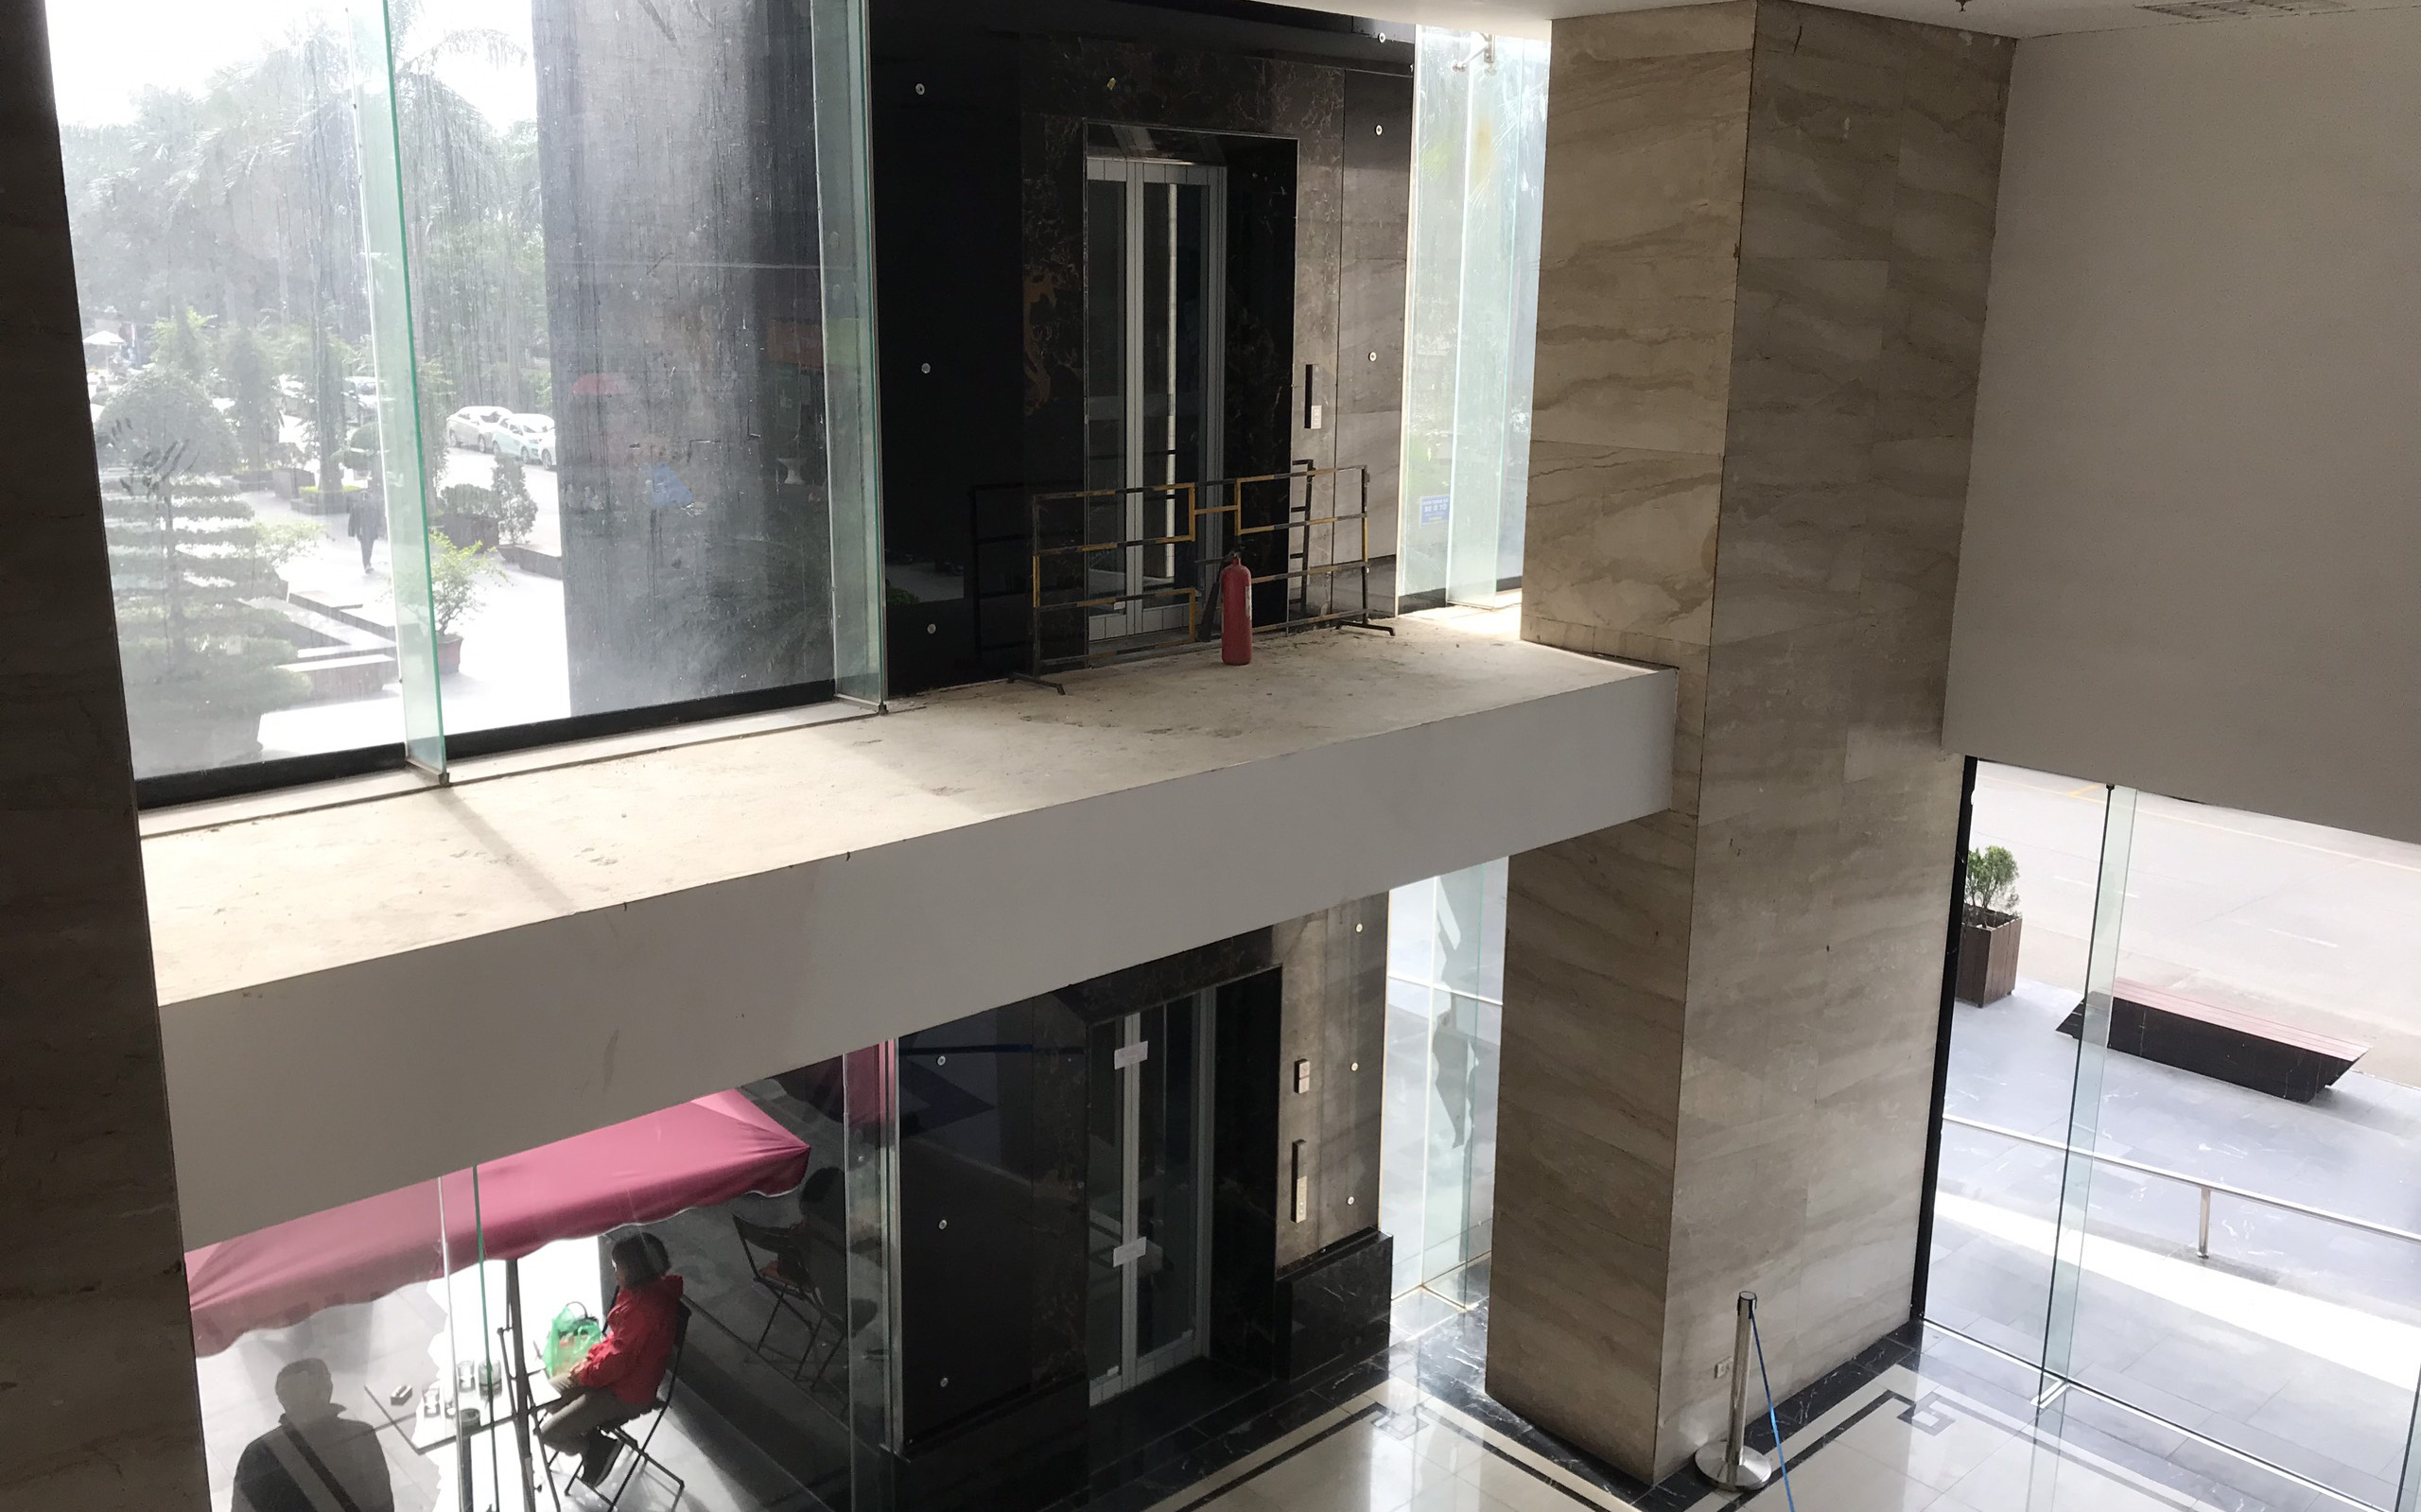 Vụ người đàn ông rơi từ tầng 2 thang máy chung cư xuống đất ở Hà Nội: “Thang do chủ đầu tư lắp đặt thêm, sai thiết kế và vận hành chui”